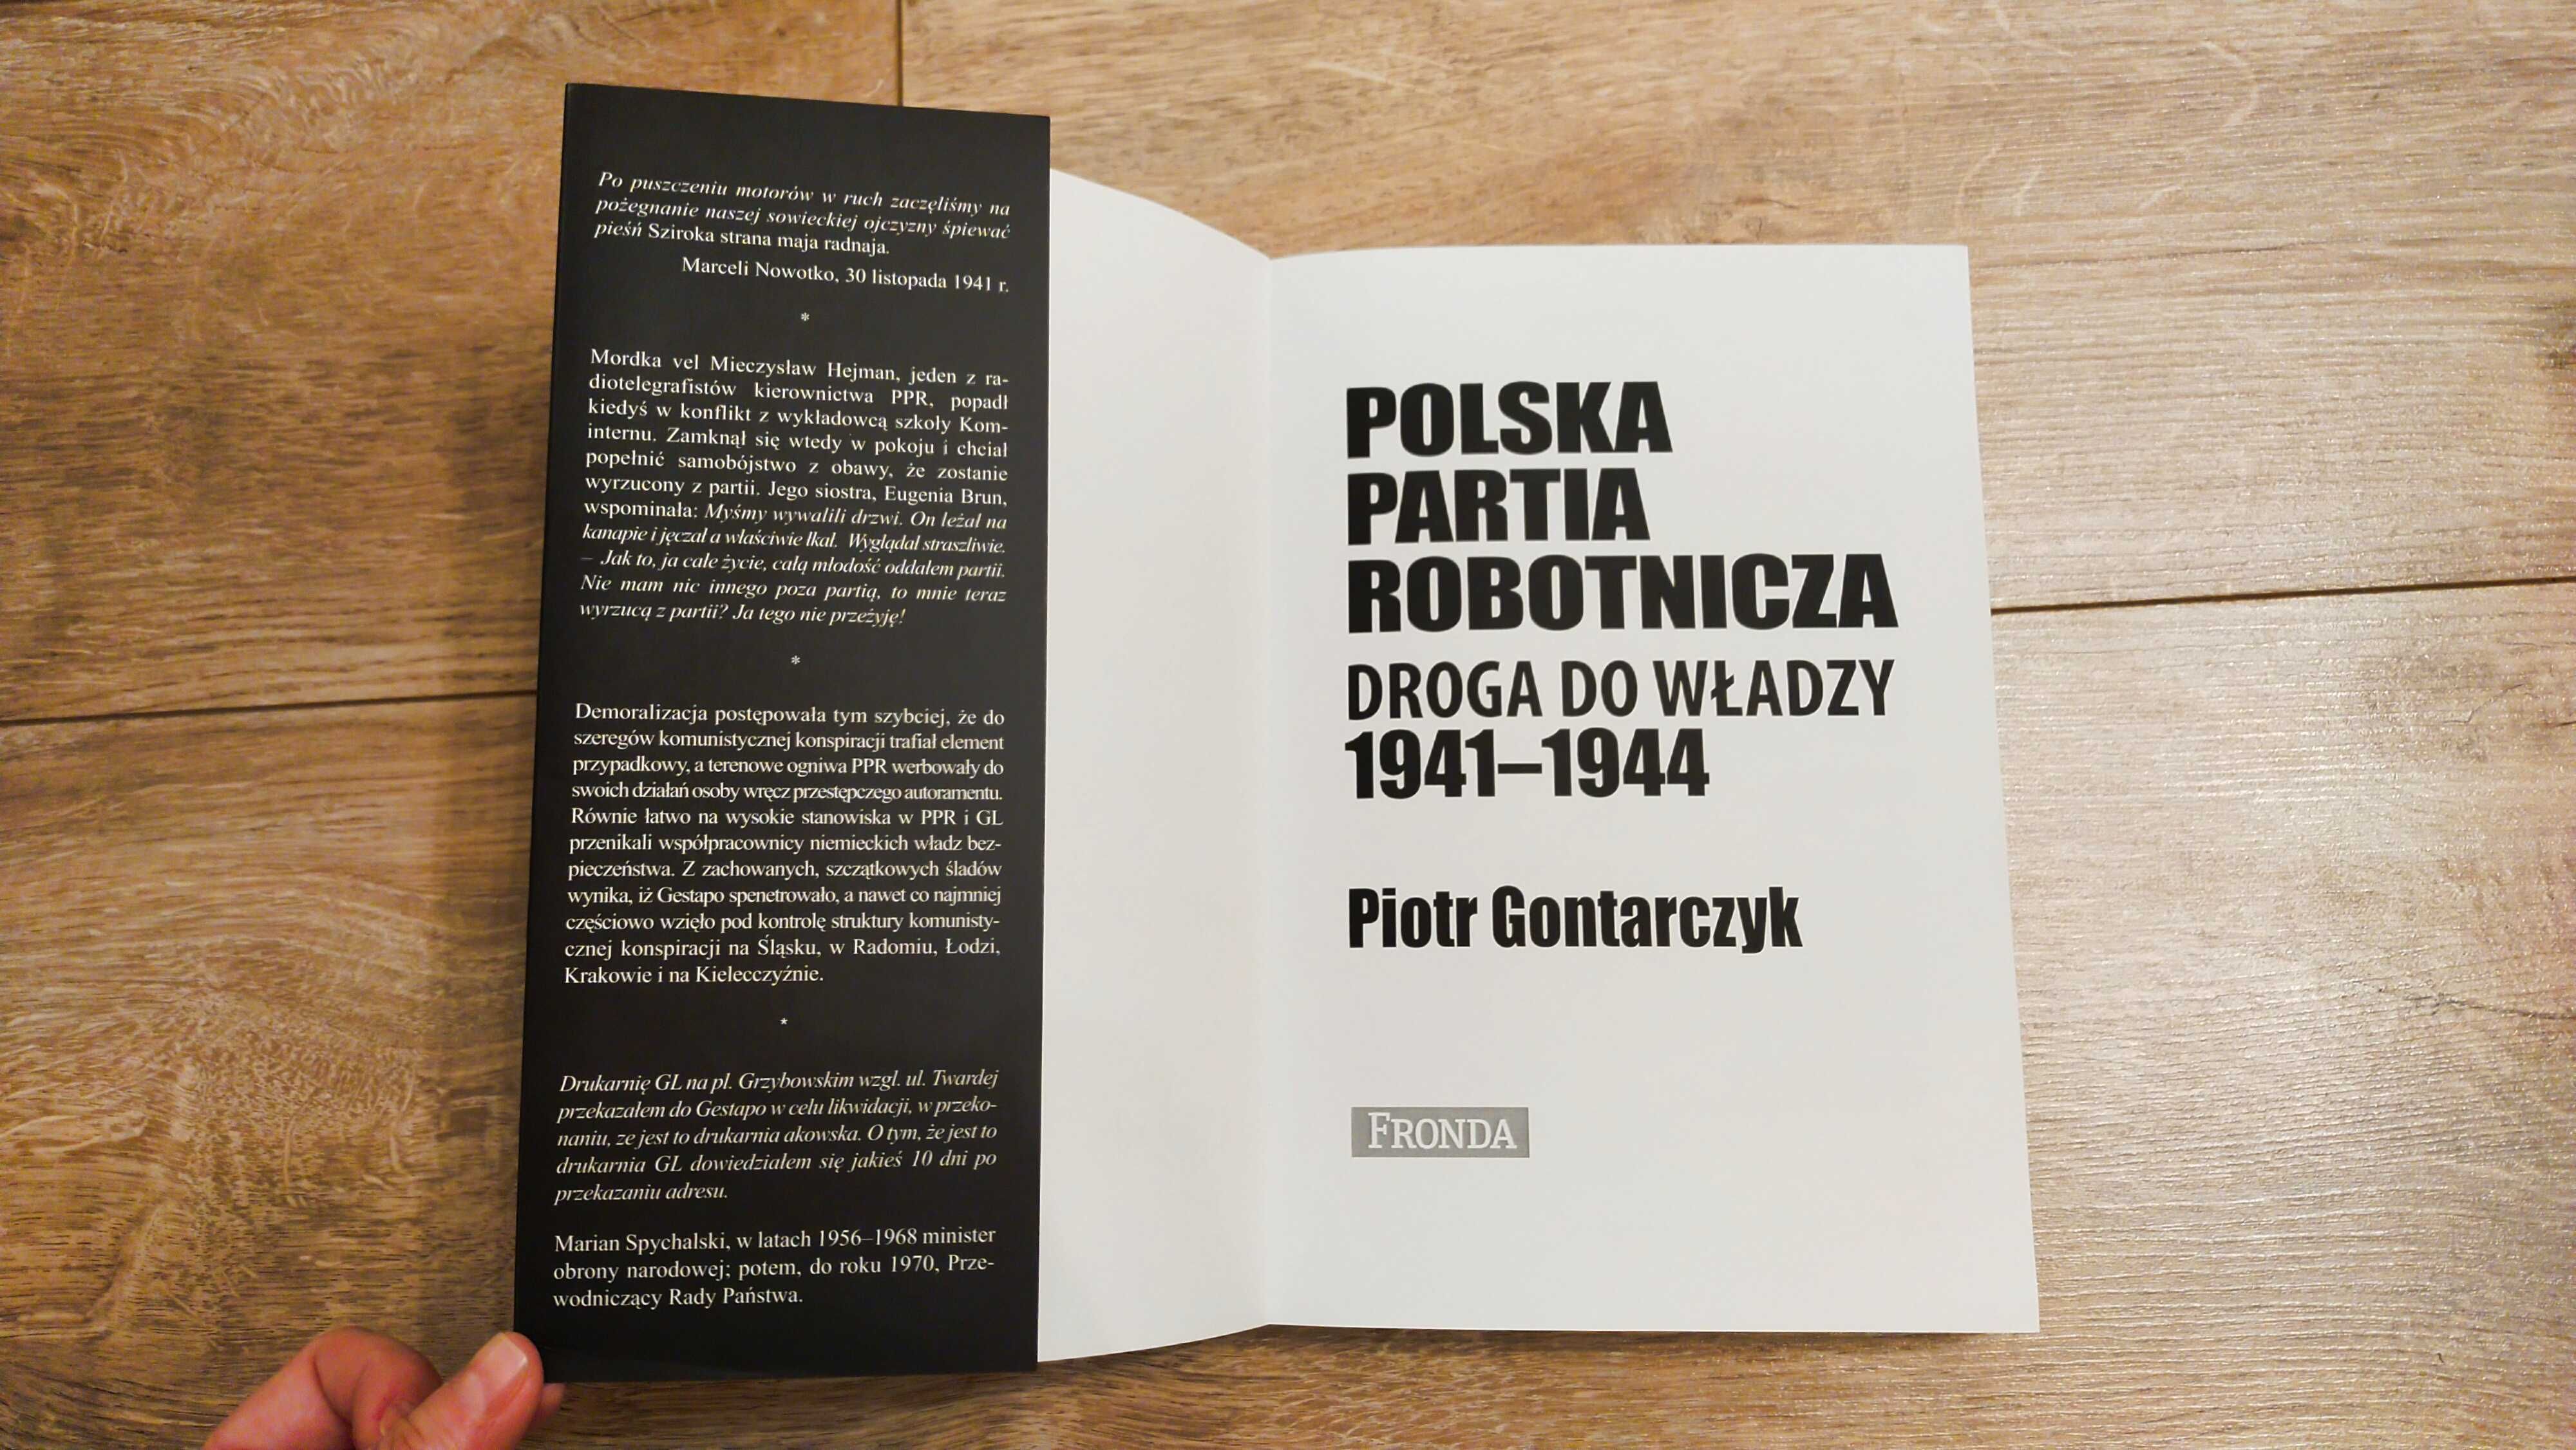 P. Gontarczyk / Polska Partia Robotnicza Droga do władzy 1941-44